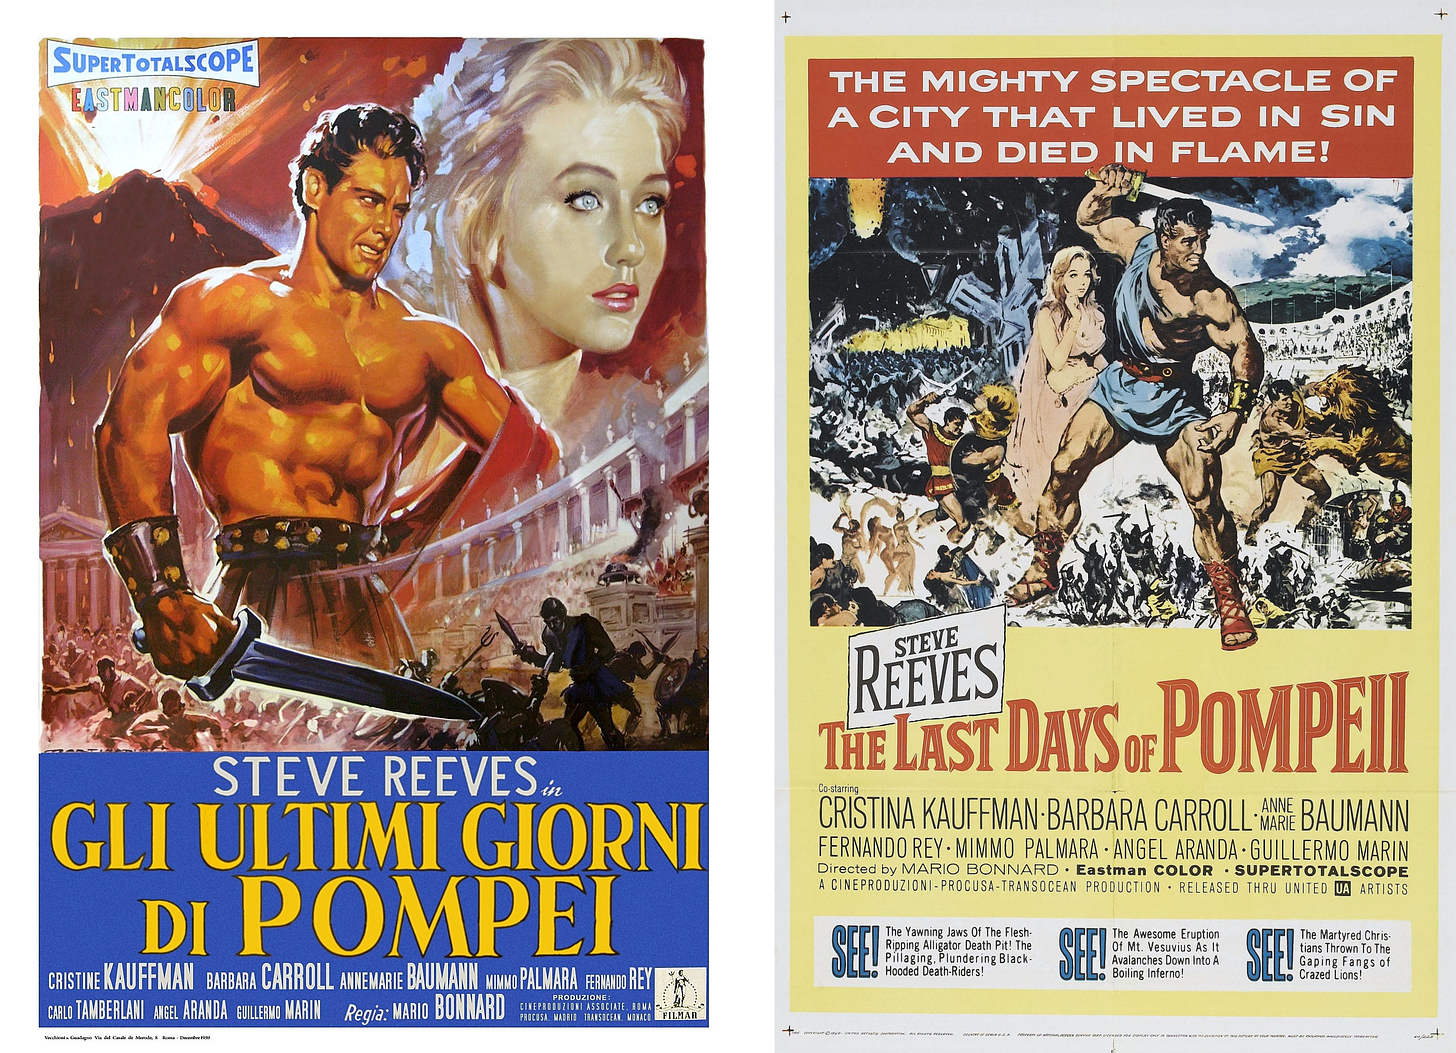 Original 1959 Italian poster and 1960 American poster.